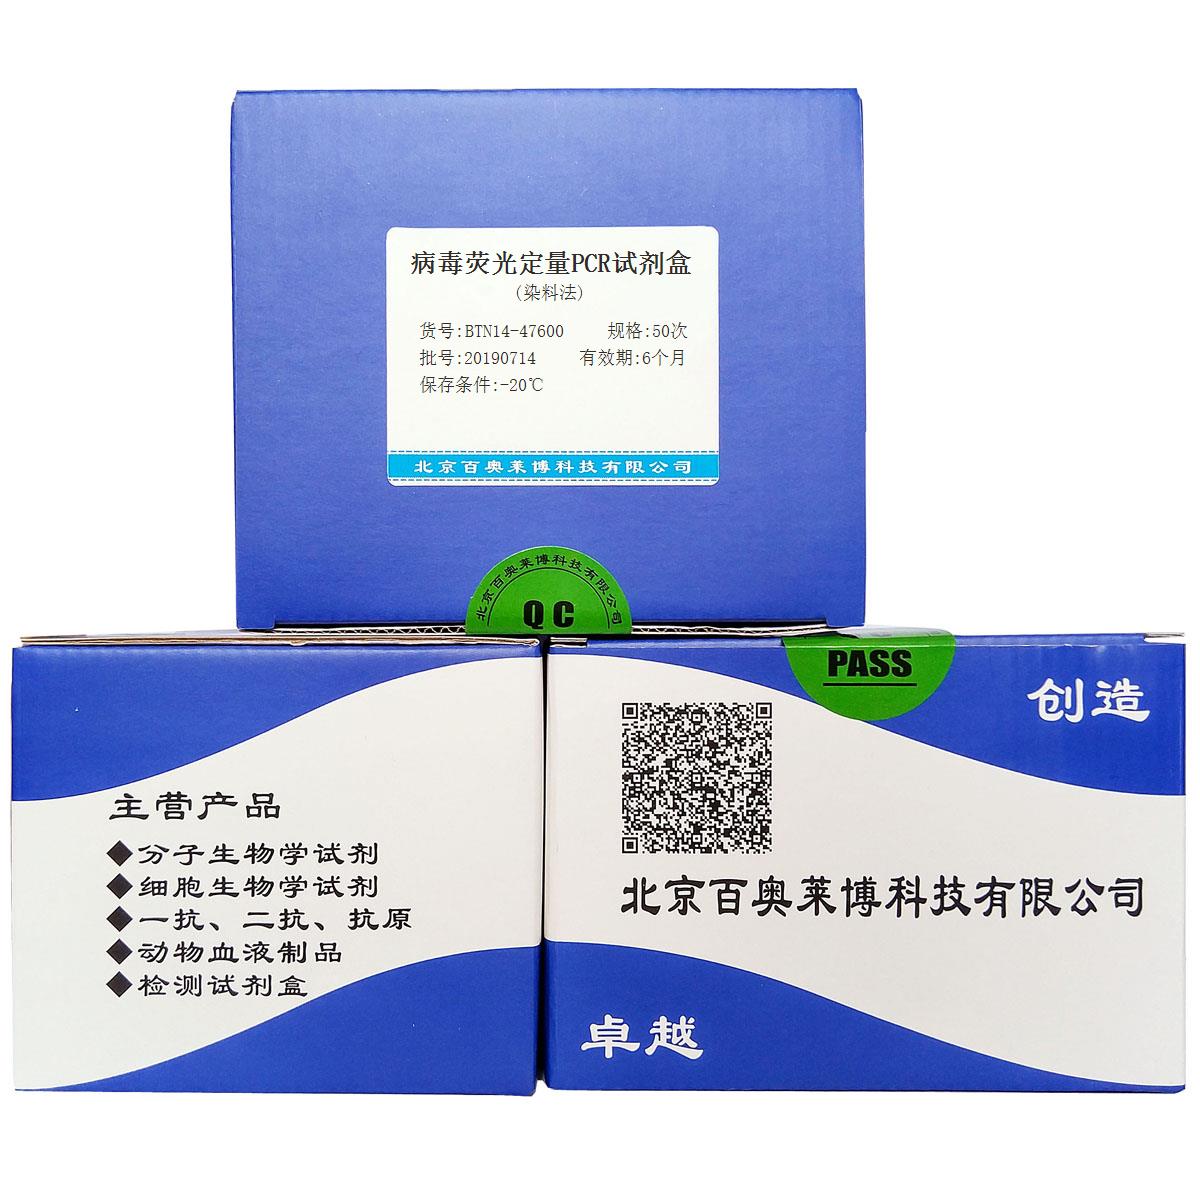 病毒荧光定量PCR试剂盒(染料法)北京品牌